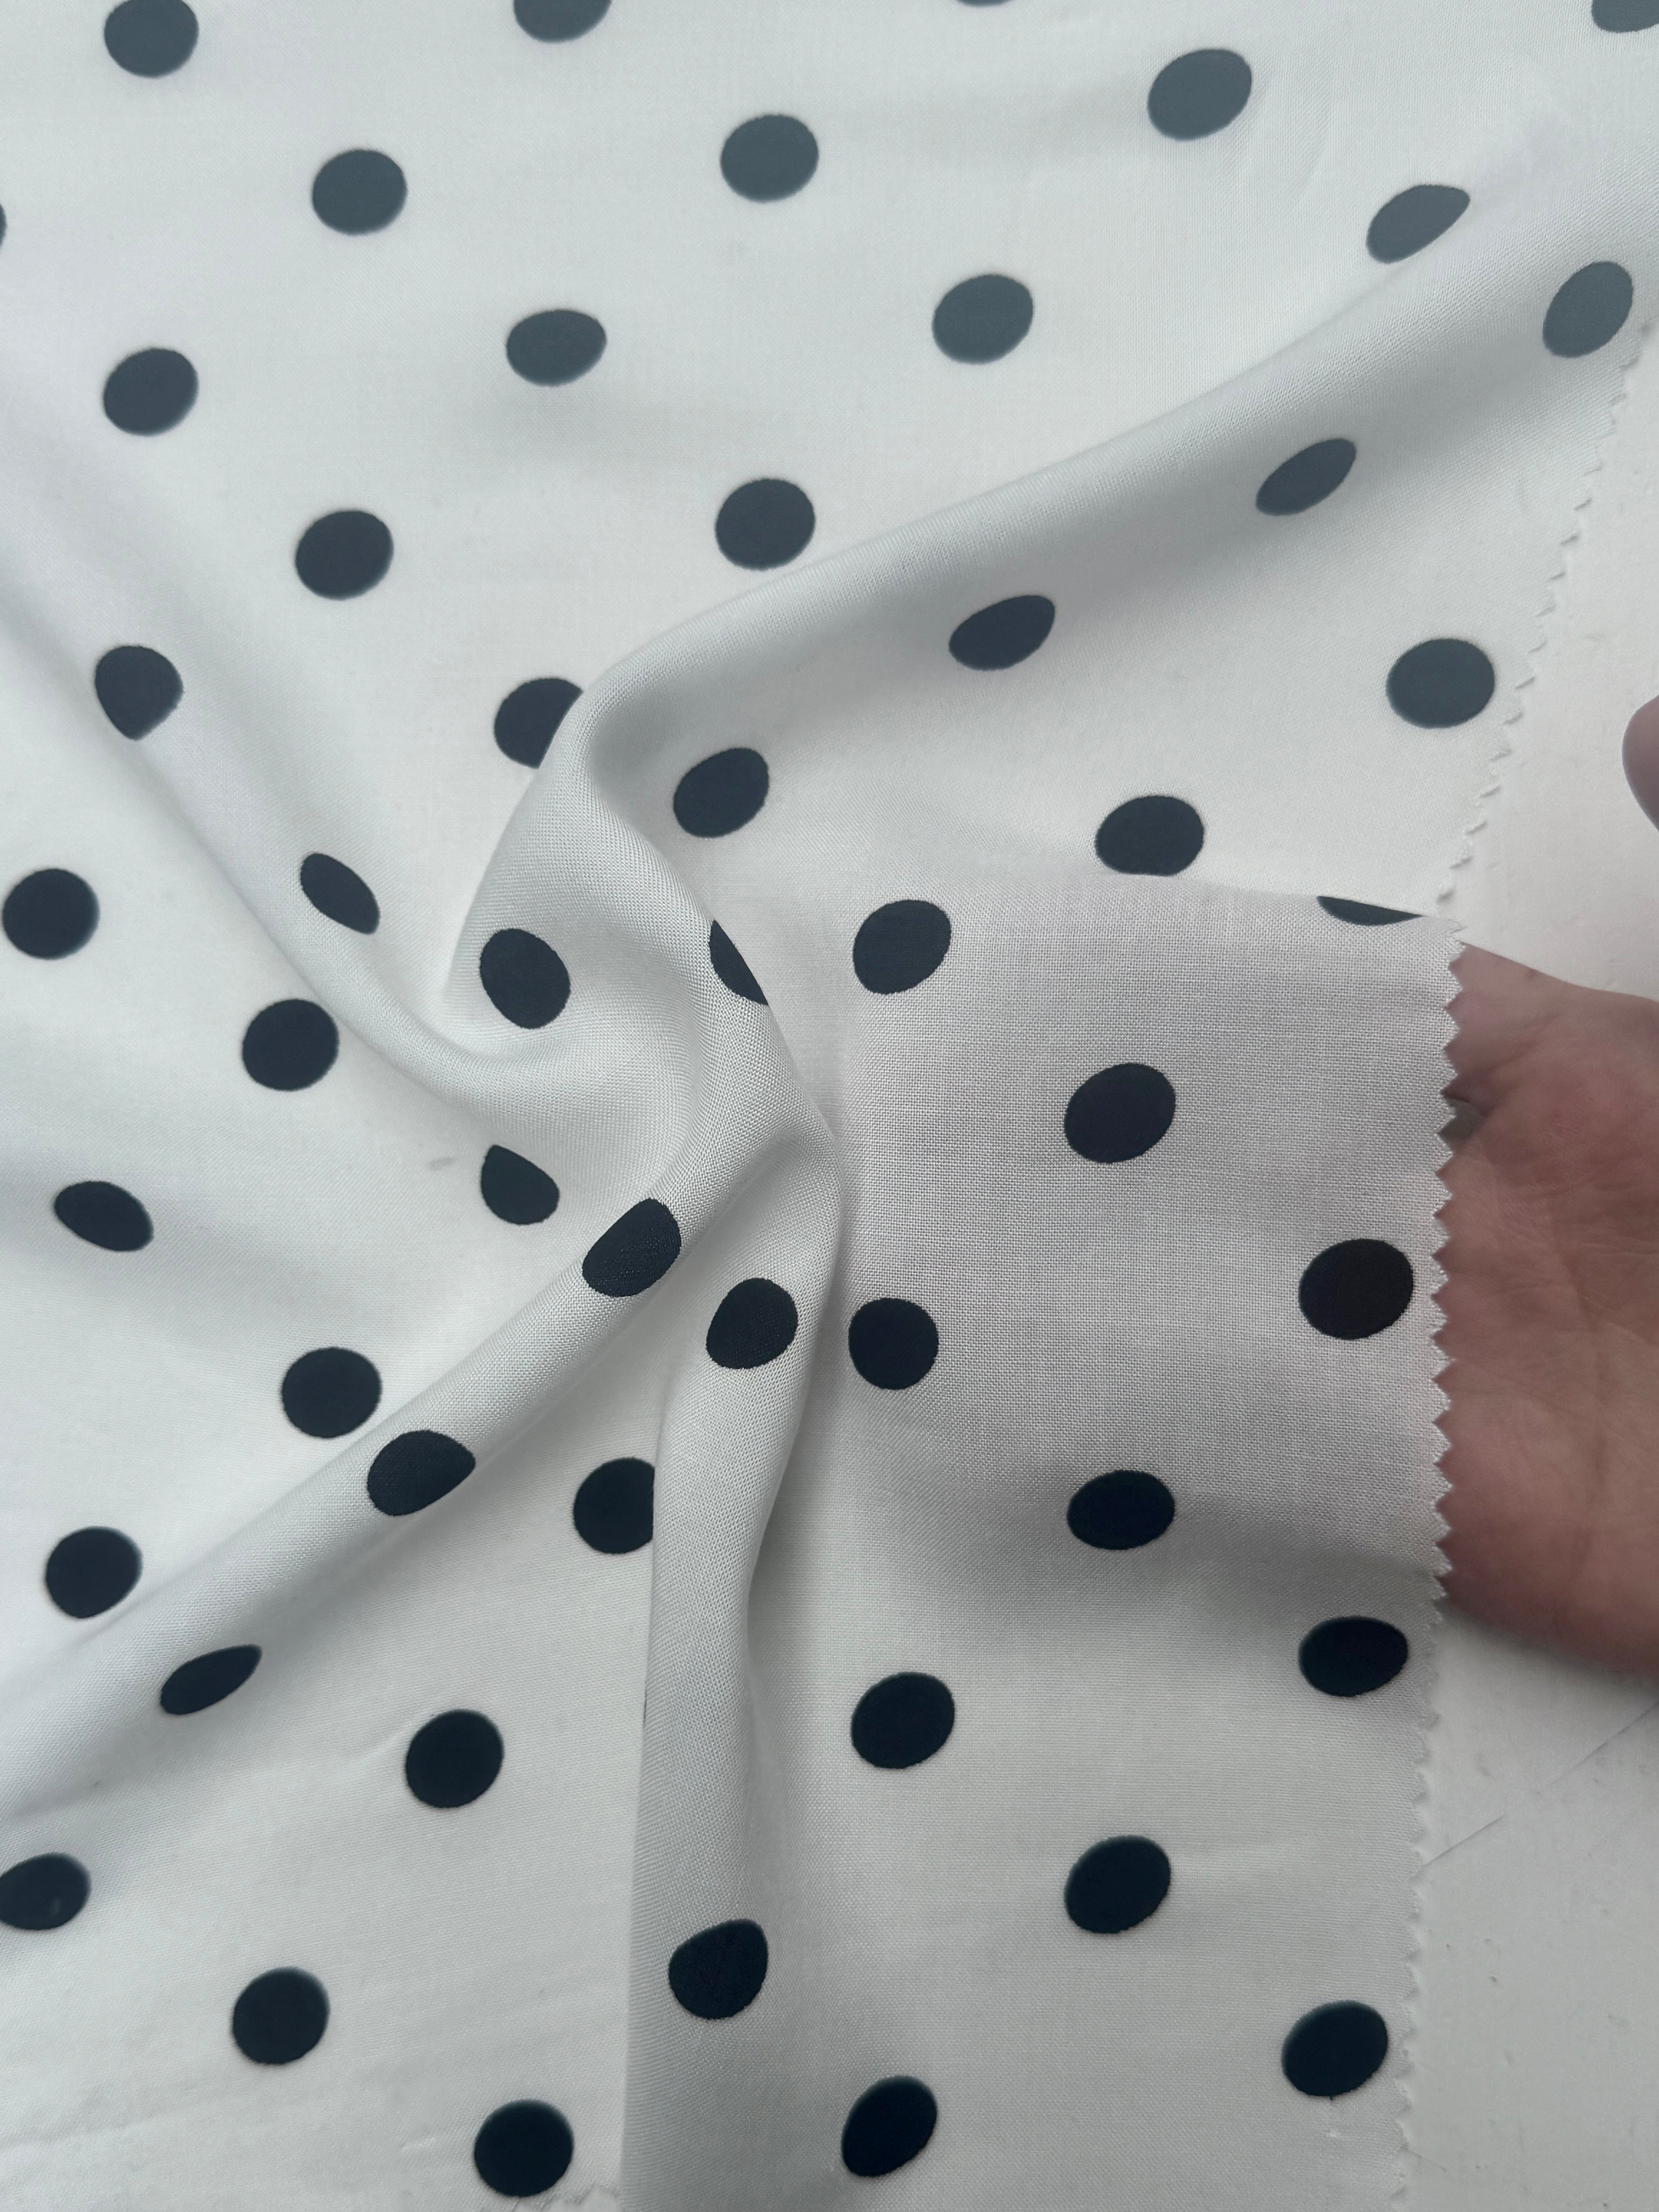 Black Polka dots on White Rayon Challis, Black Rayon Challis, Black and white Rayon Challis, eco-friendly fabric, pure Rayon Challis fabric, Rayon Challis, Rayon Challis fabric, kiki textiles, sewing